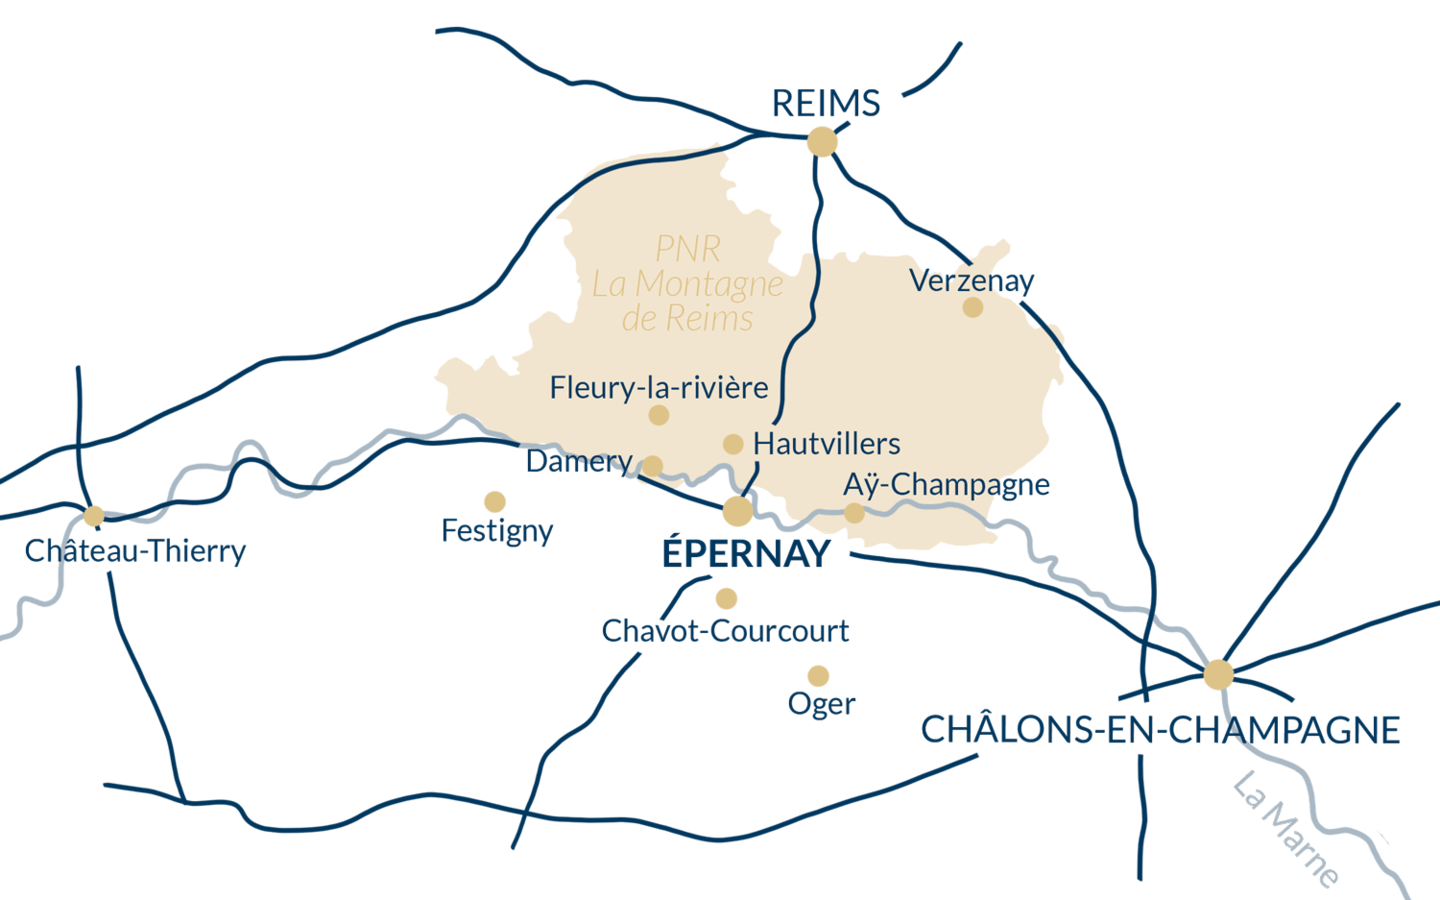 La ville idéale pour visiter la champagne
Guide parfait pur un weekend en champagne
Ou aller en champagne
Epernay et Reims sont les capitales du Champagne